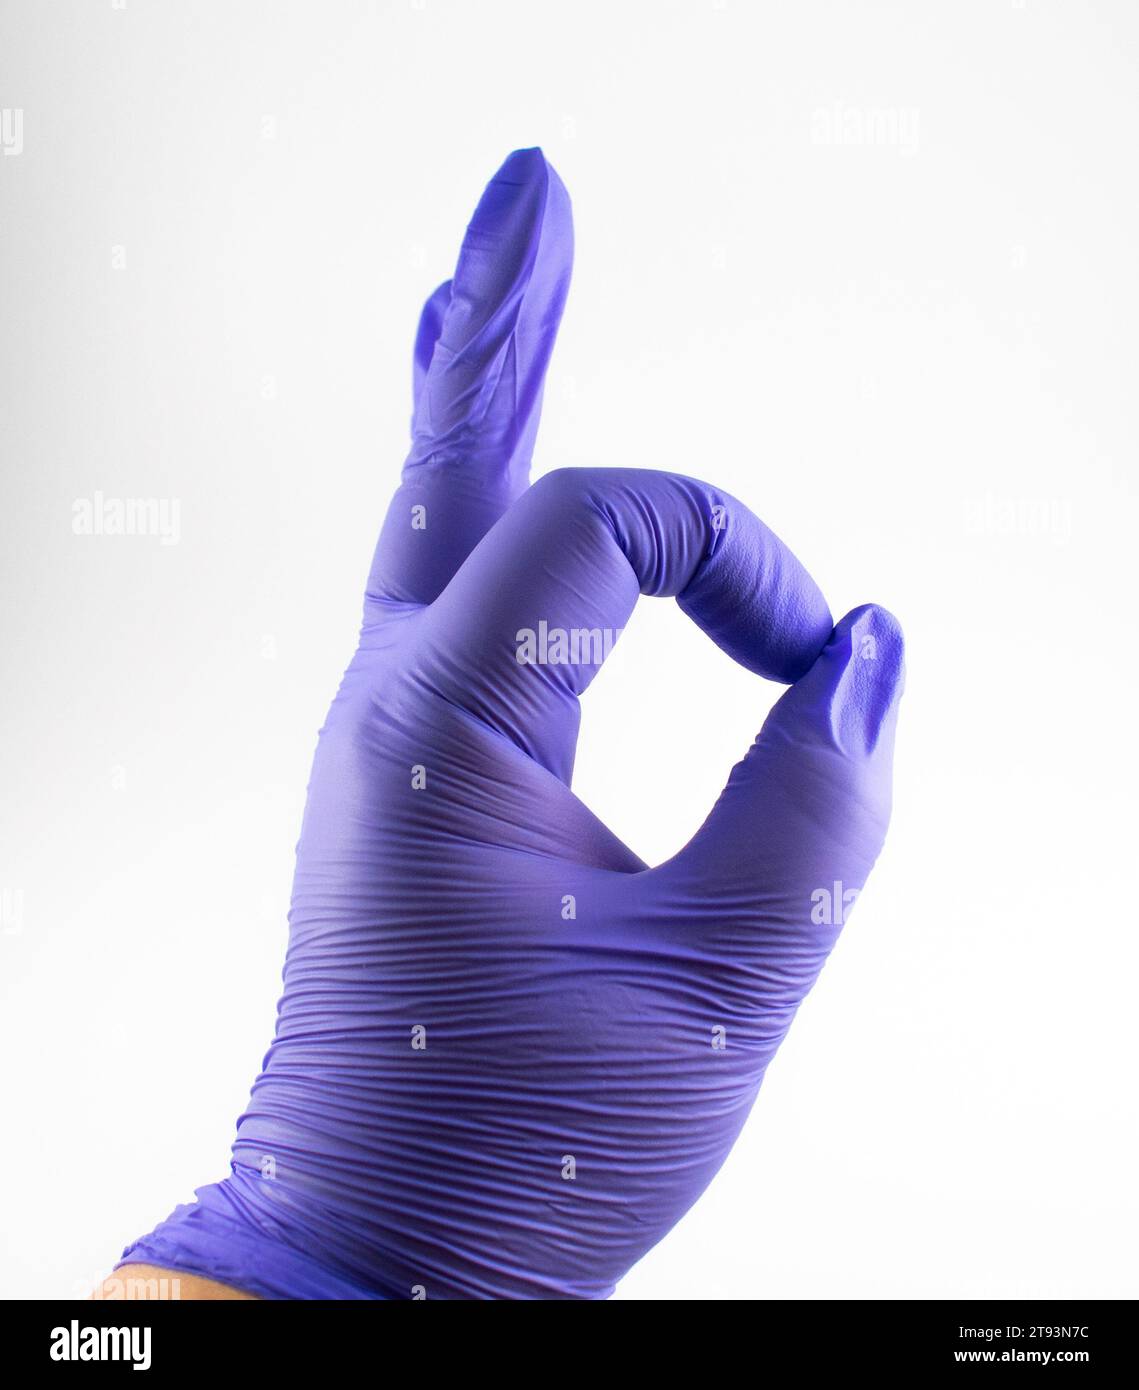 Photo en gros plan d'une main gantée tenant un poivre fantôme Banque D'Images